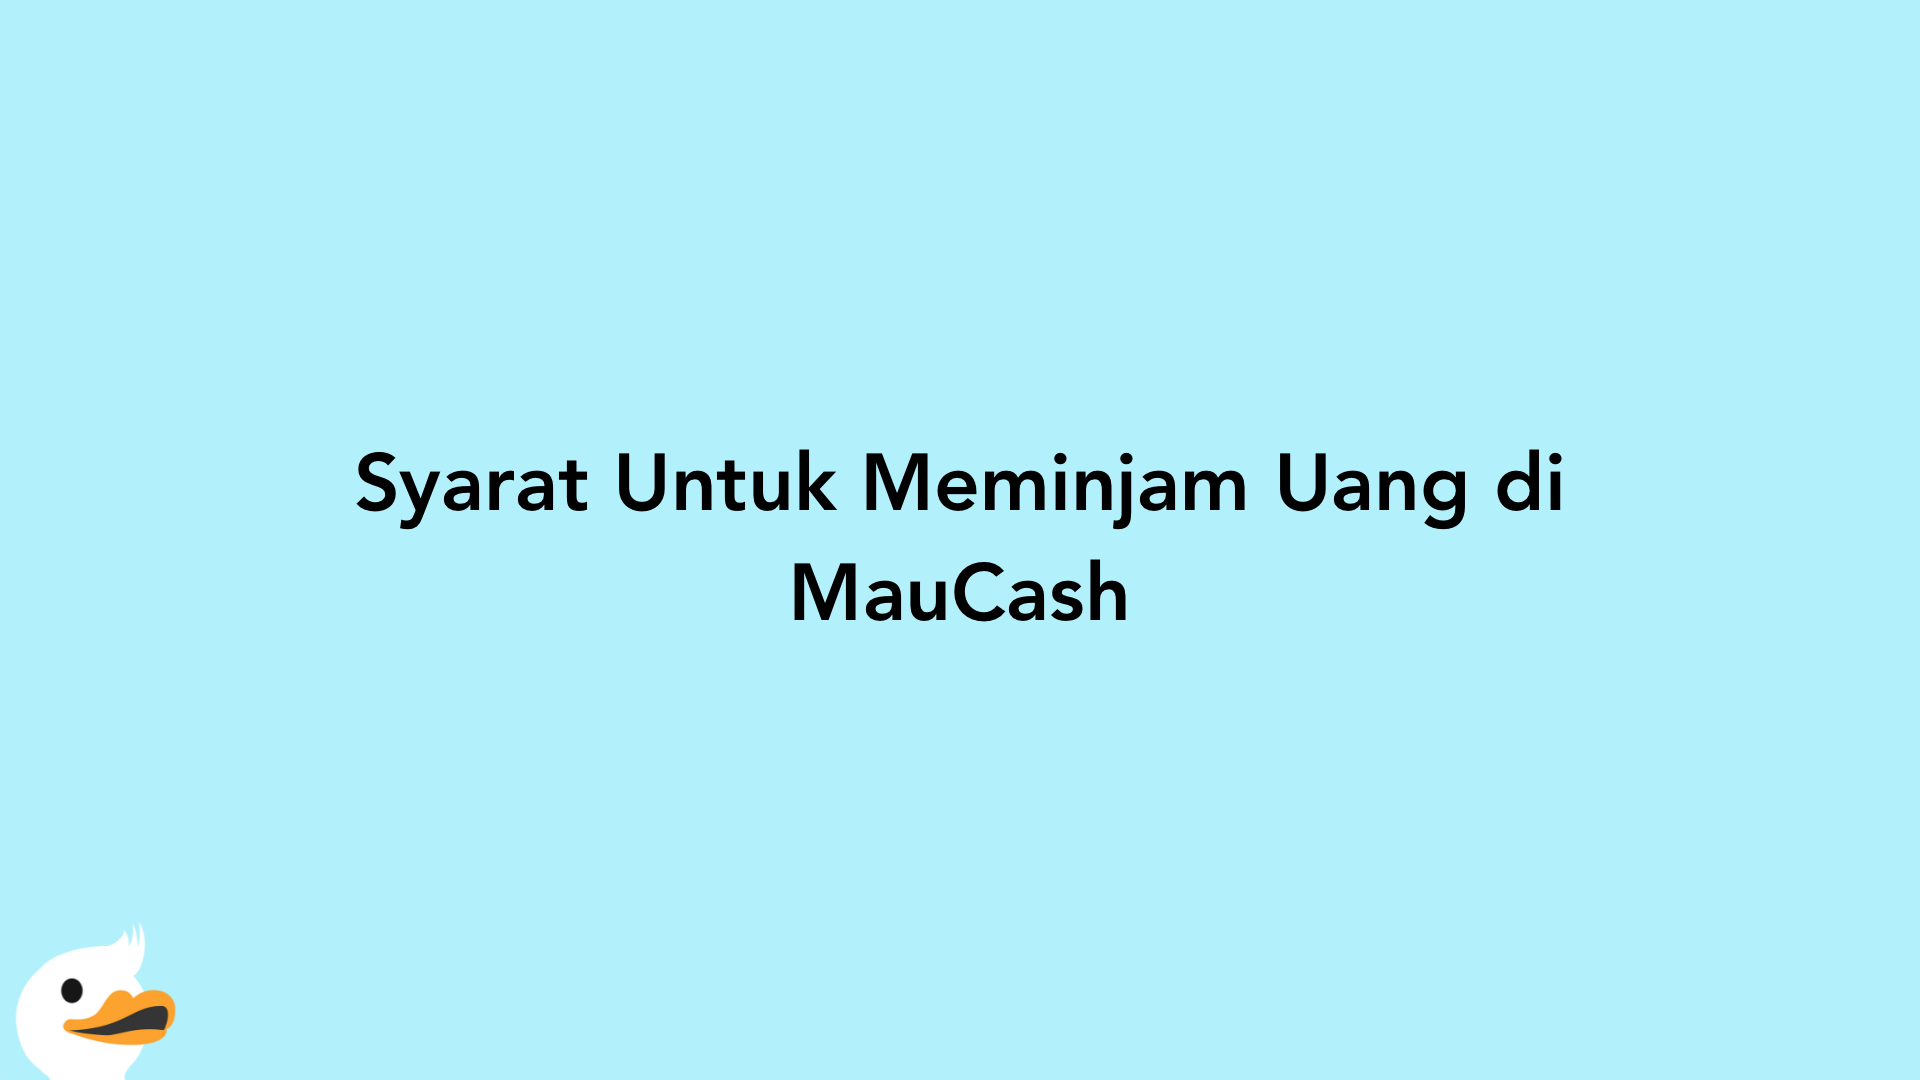 Syarat Untuk Meminjam Uang di MauCash